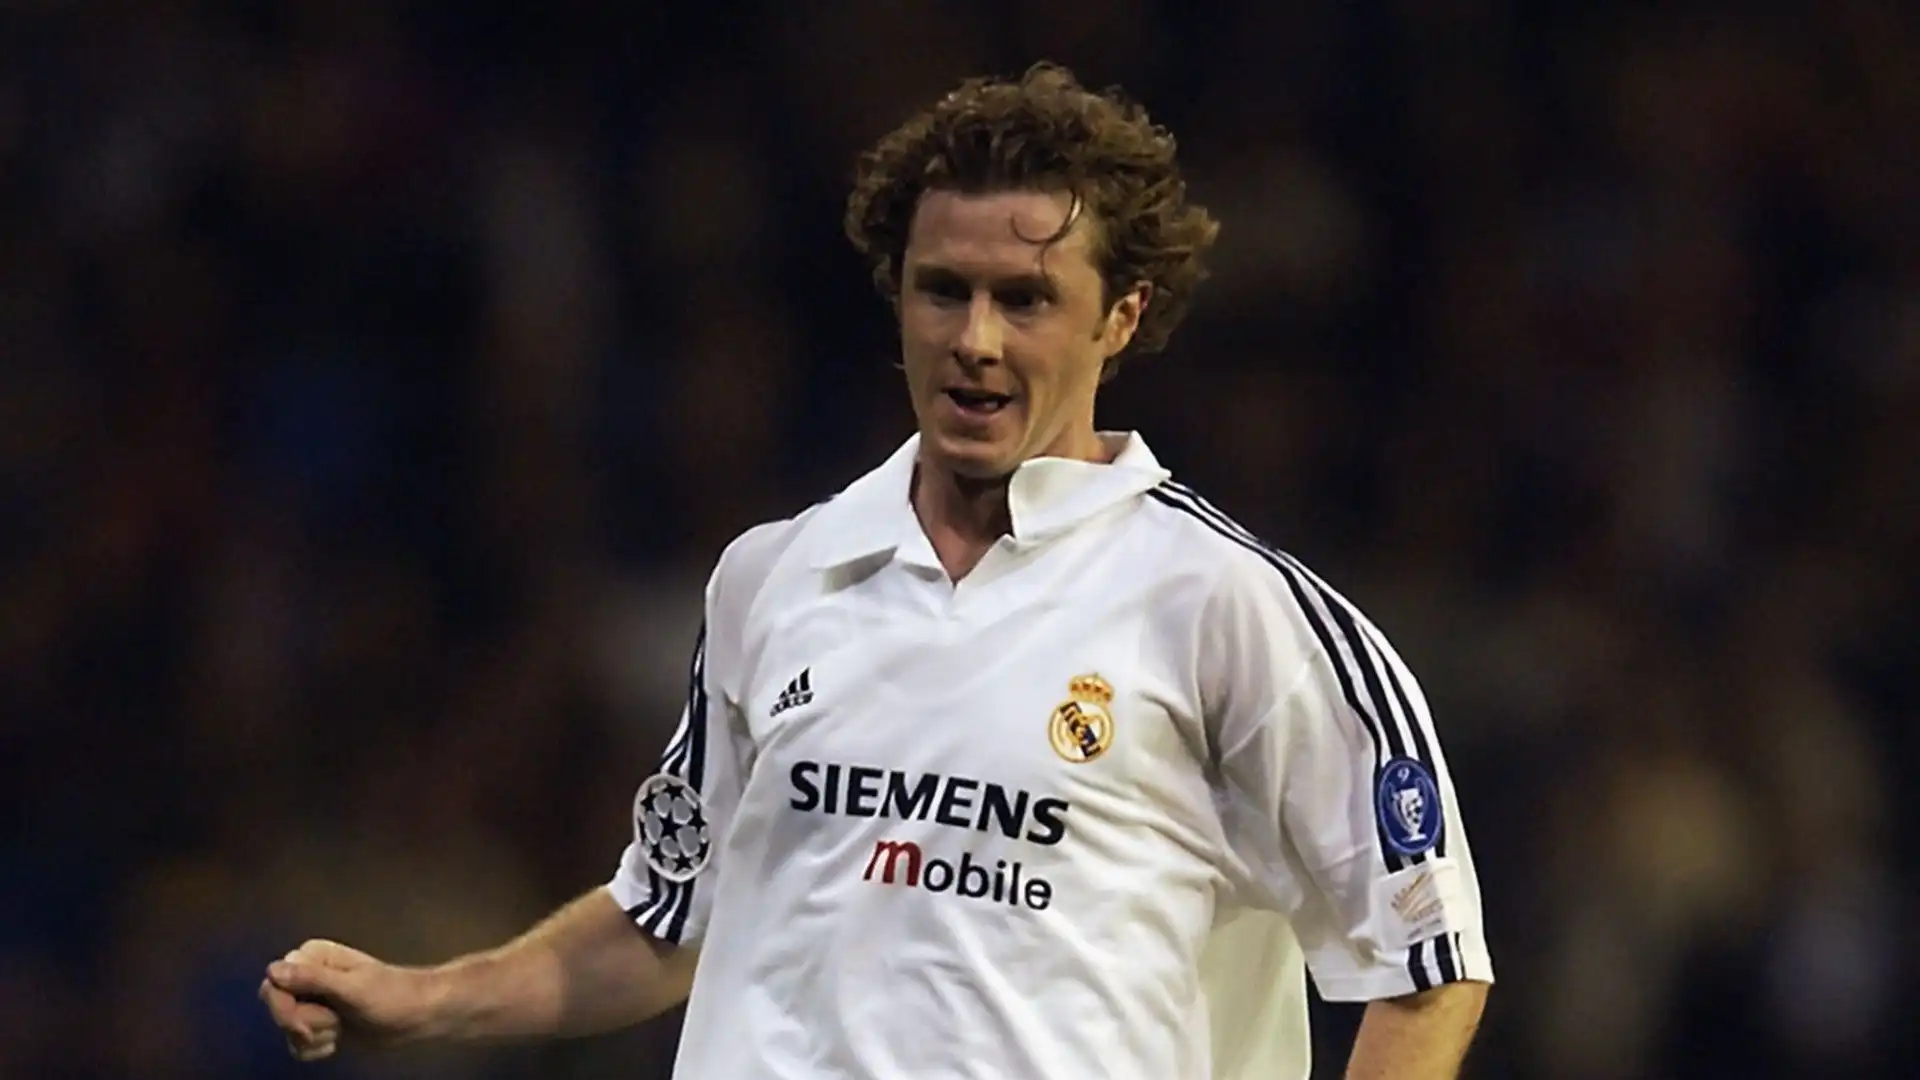 Steve McManaman ha totalizzato 8 gol in 94 presenze con il Real Madrid dal 1999 al 2003